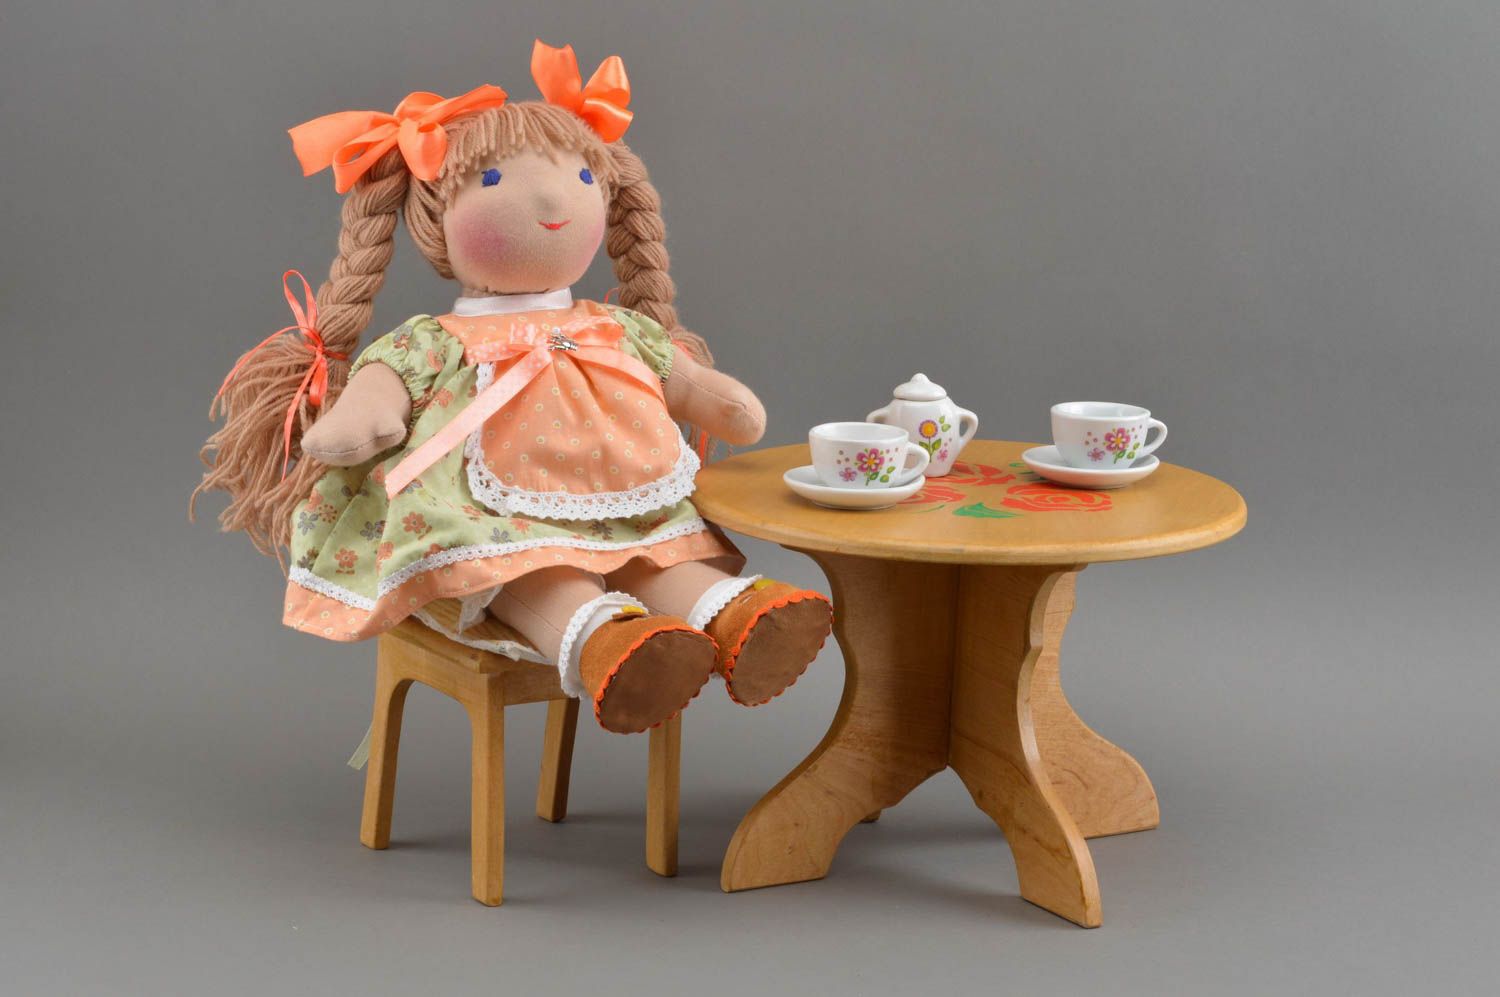 Красивая авторская игрушечная кукла из трикотажа и хлопка ручной работы Кэт фото 1